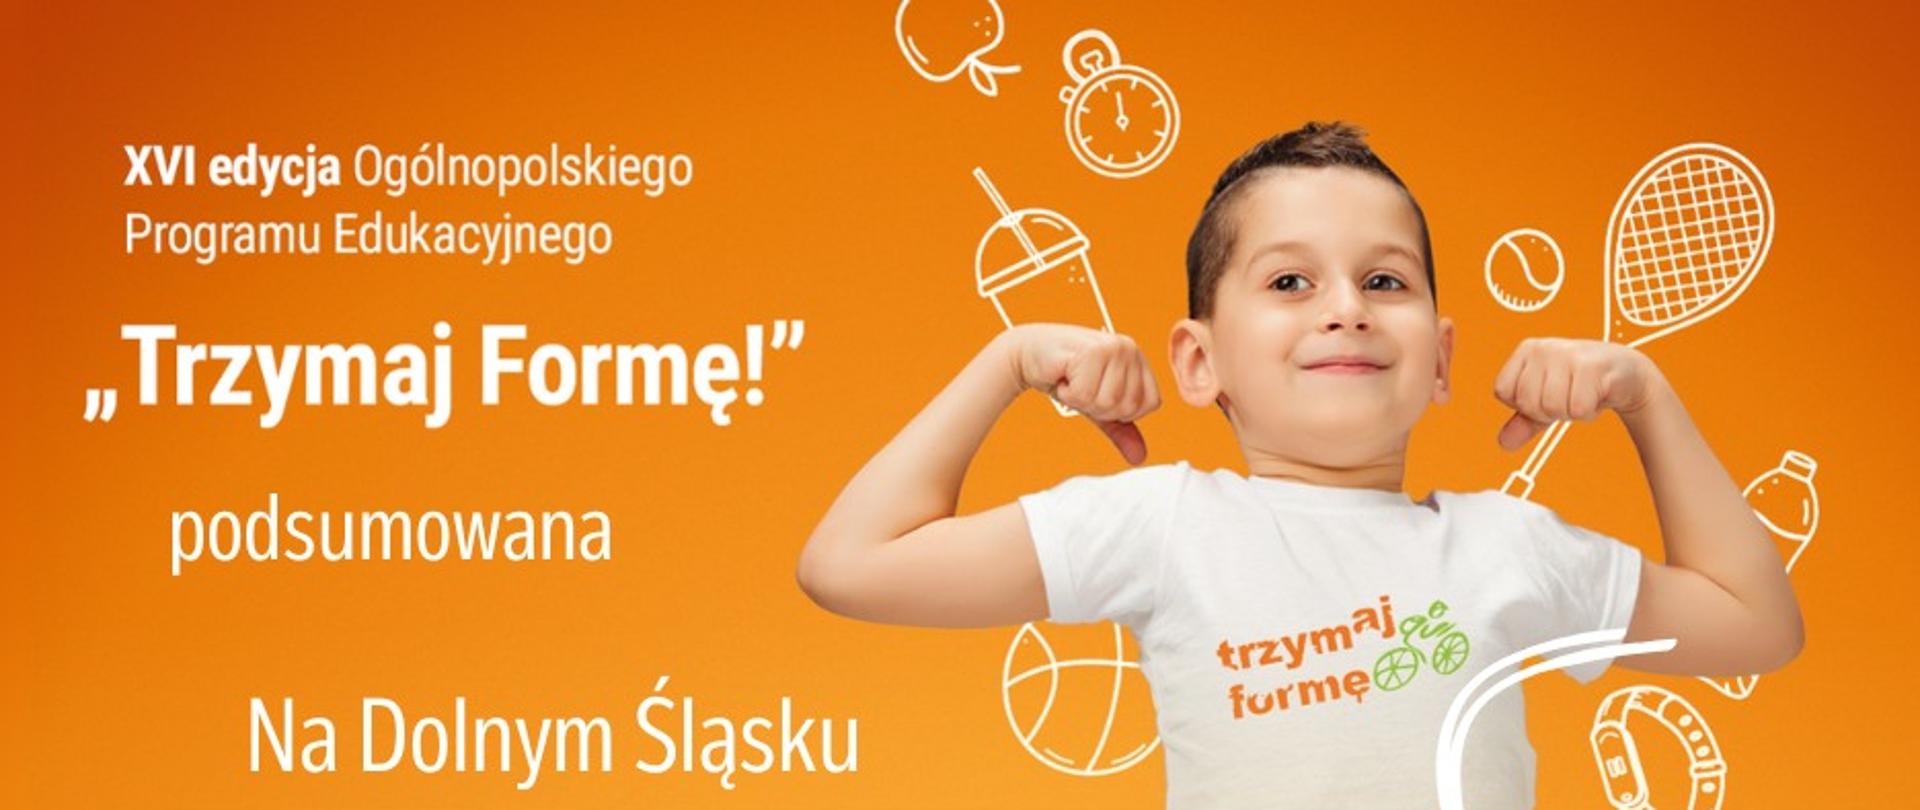 Grafika przedstawia chłopca w białej koszulce z logo "Trzymaj Formę" oraz dane statystyczne z XVI edycji Programu w województwie dolnośląskim.